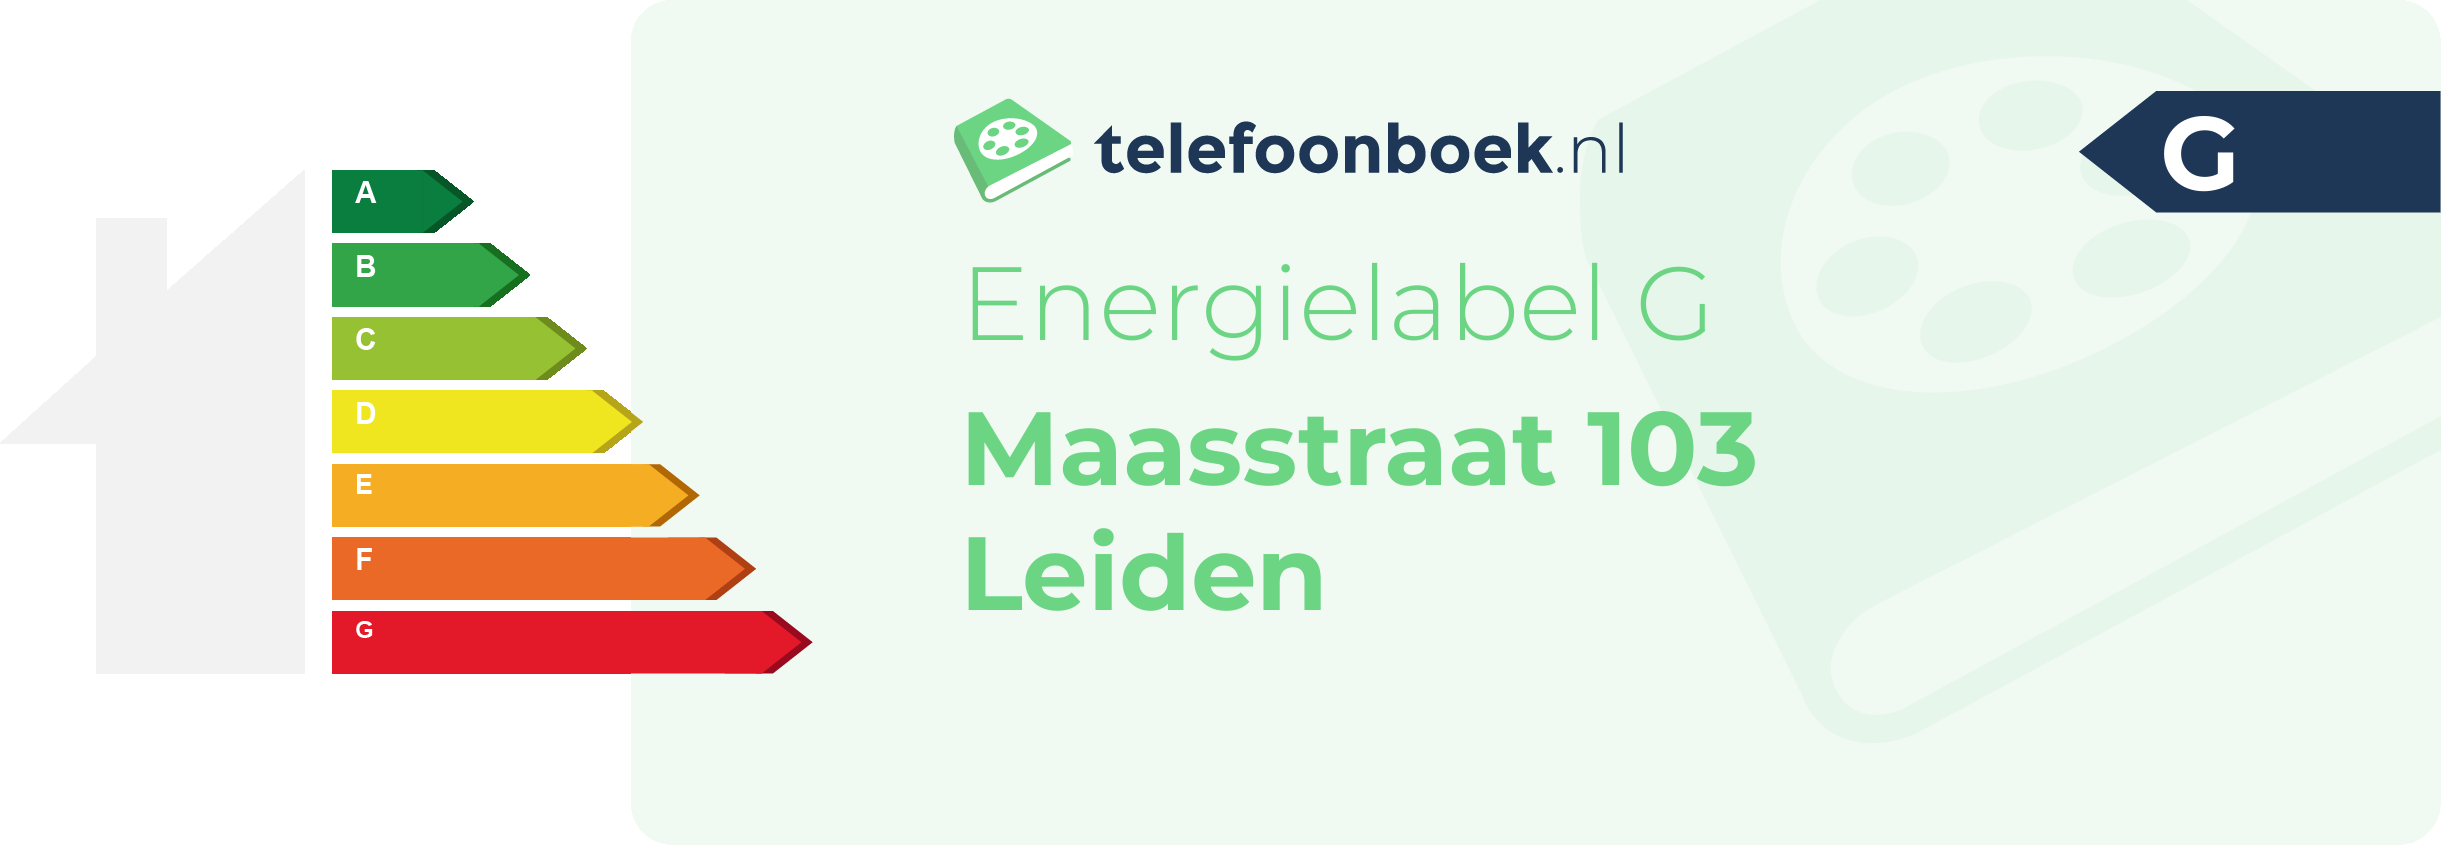 Energielabel Maasstraat 103 Leiden